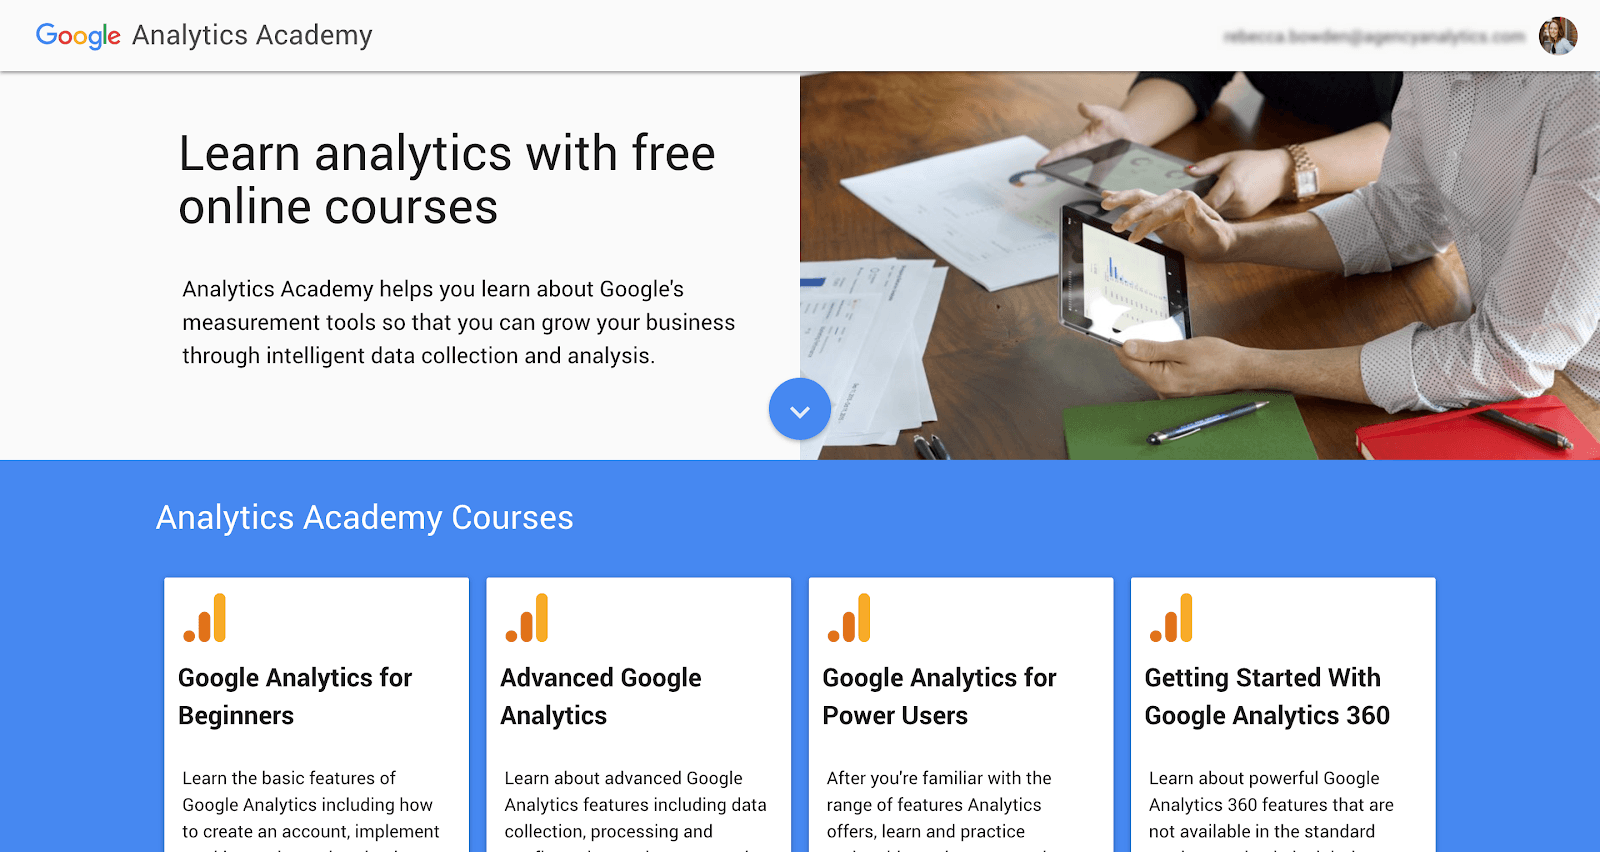 Google Analytics Academy courses